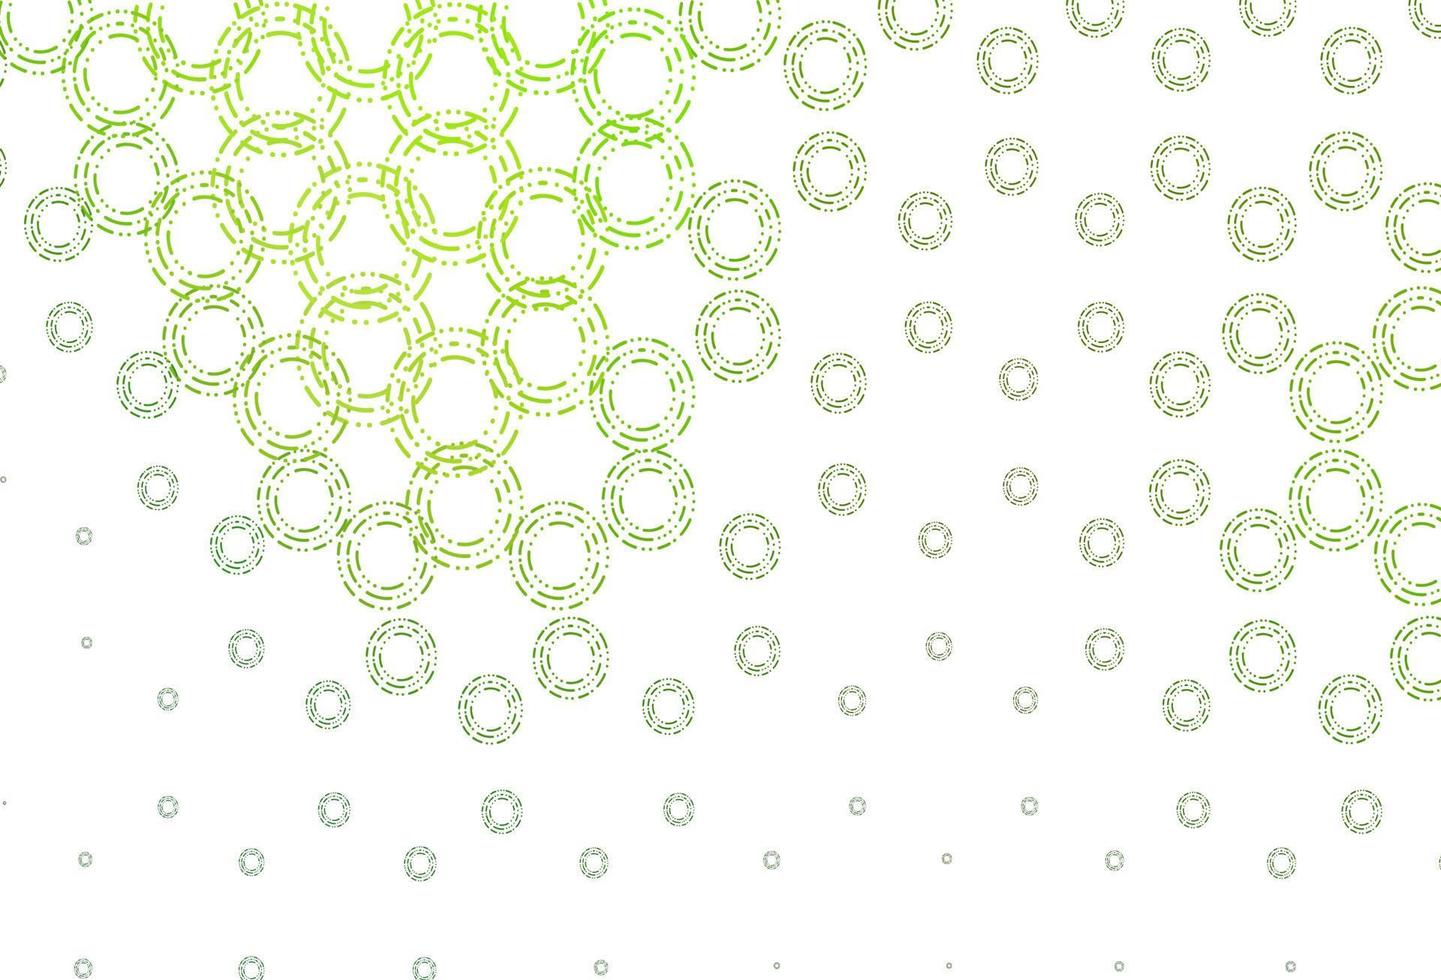 texture vettoriale verde chiaro con dischi.